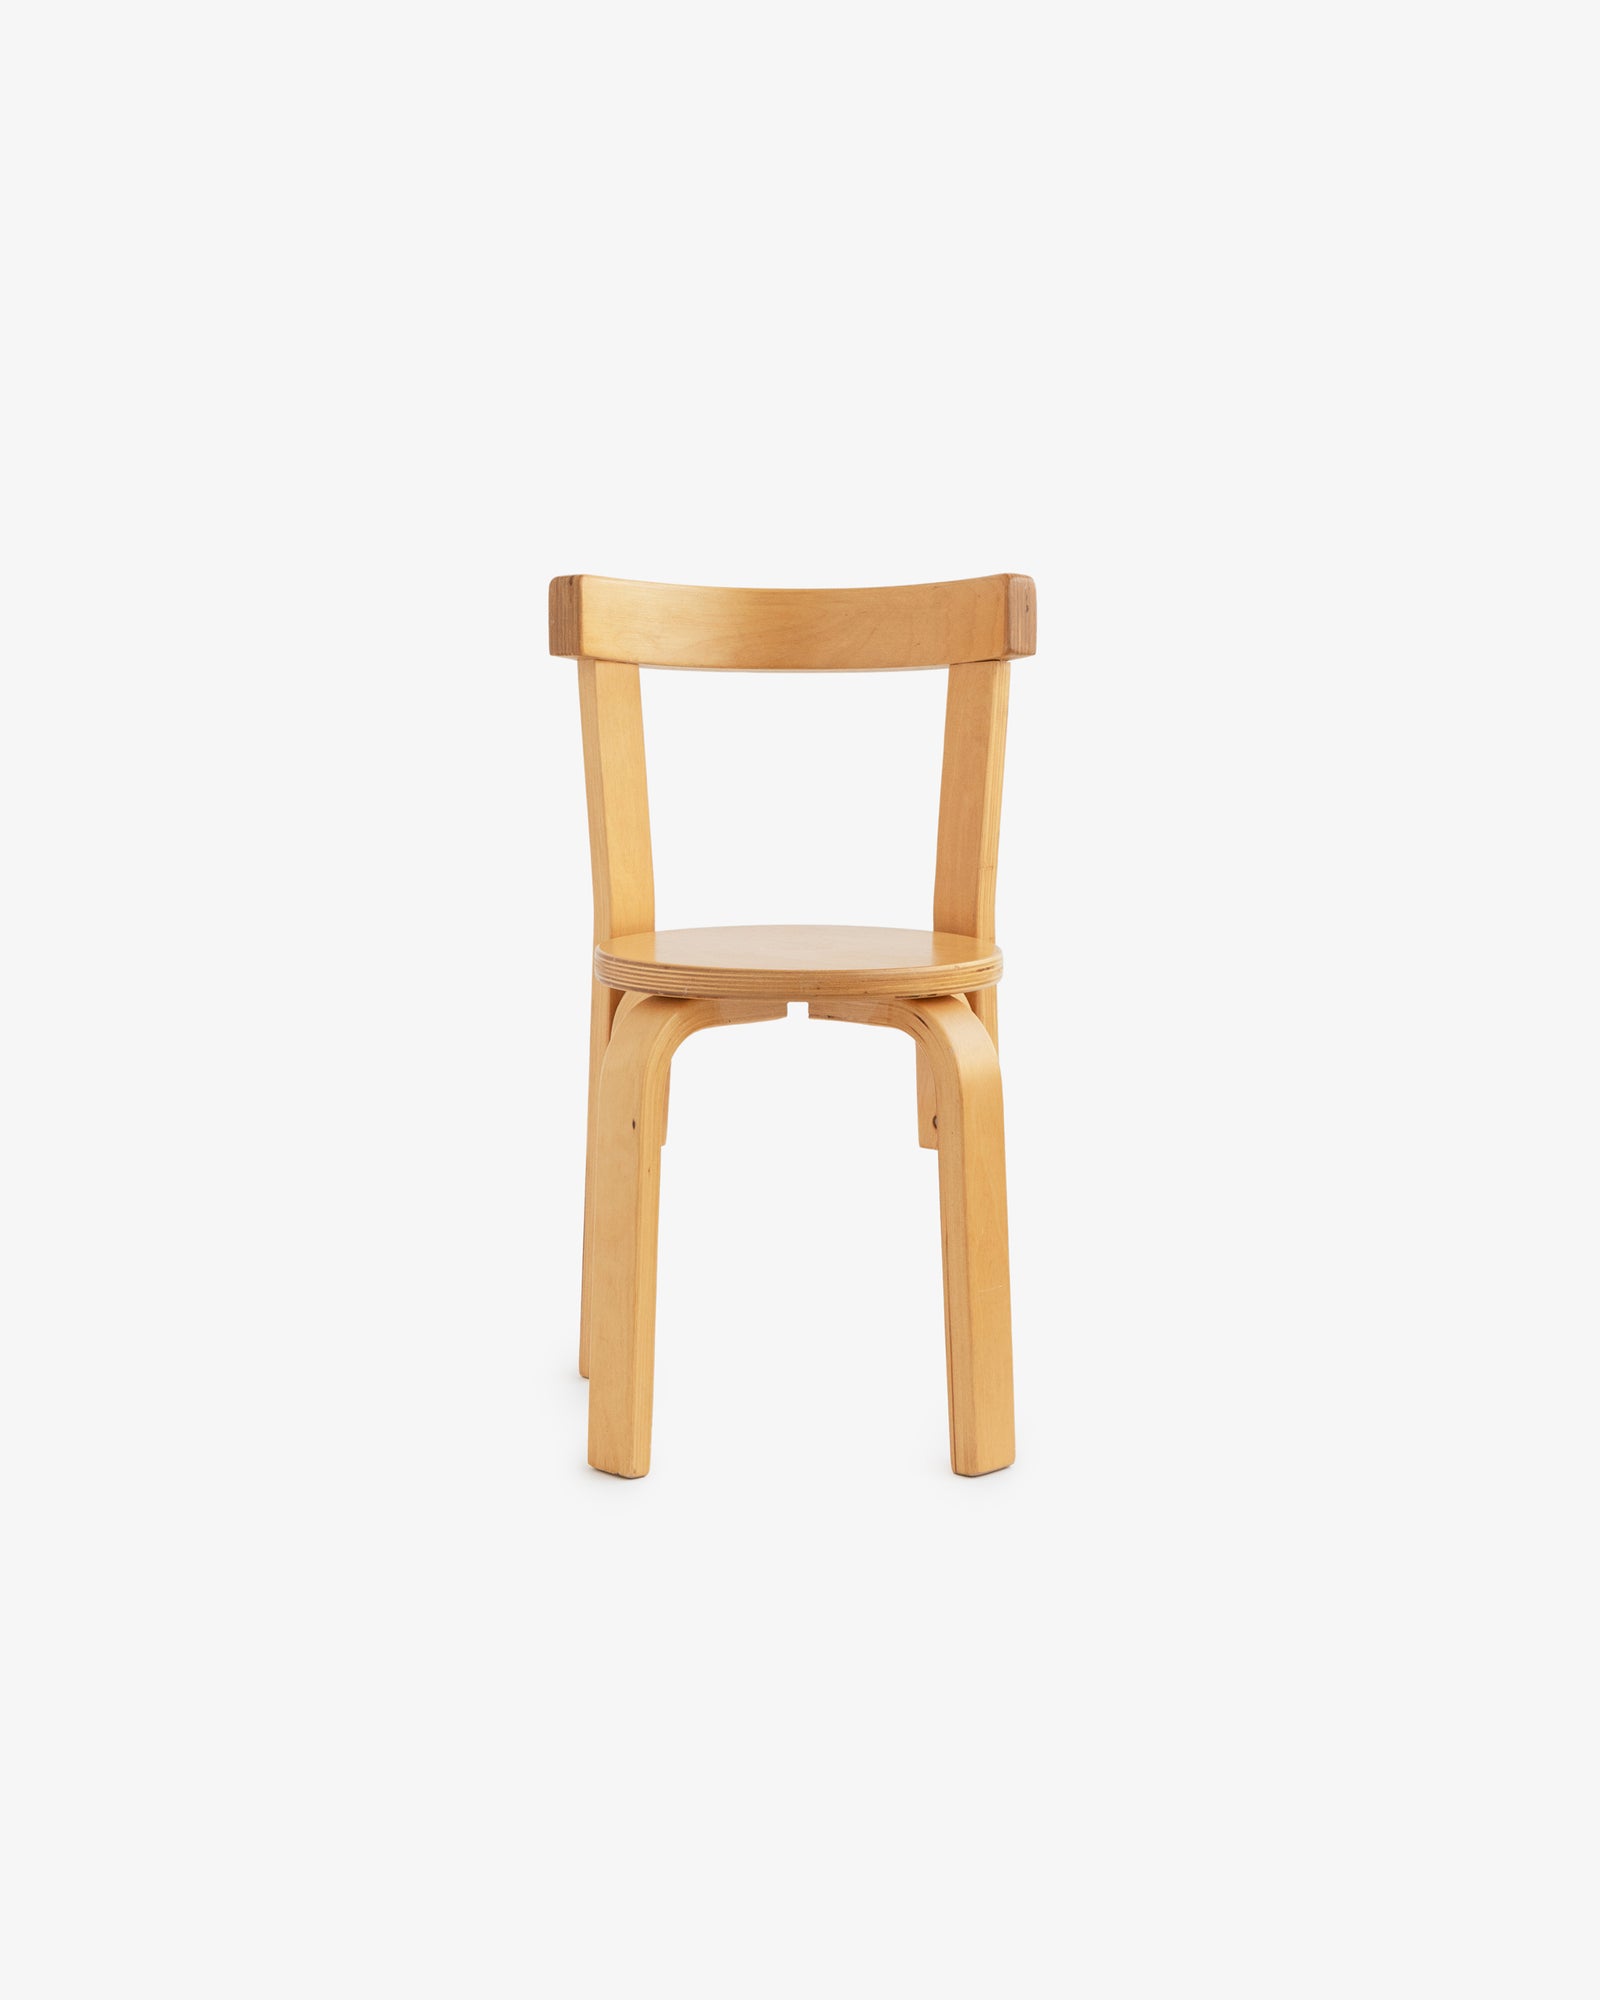 Children's Artek 68 Chair Designed by Alvar Aalto